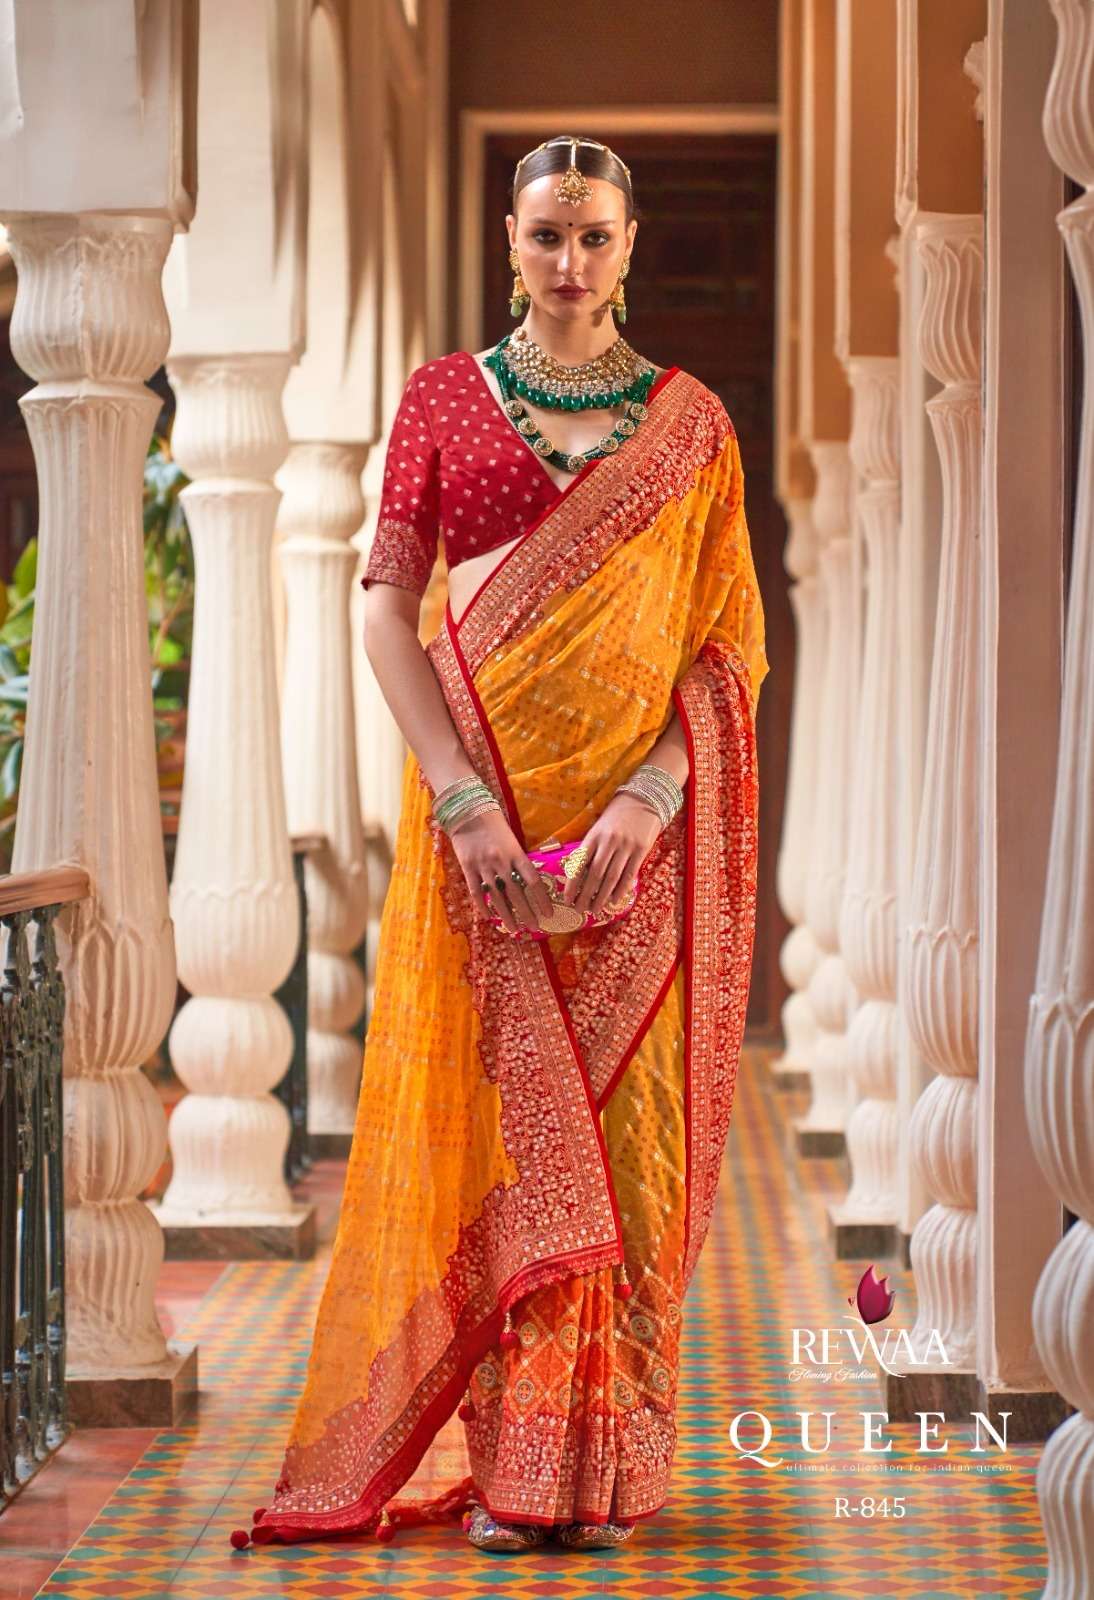 rewaa present queen designer work function wear saree collection 